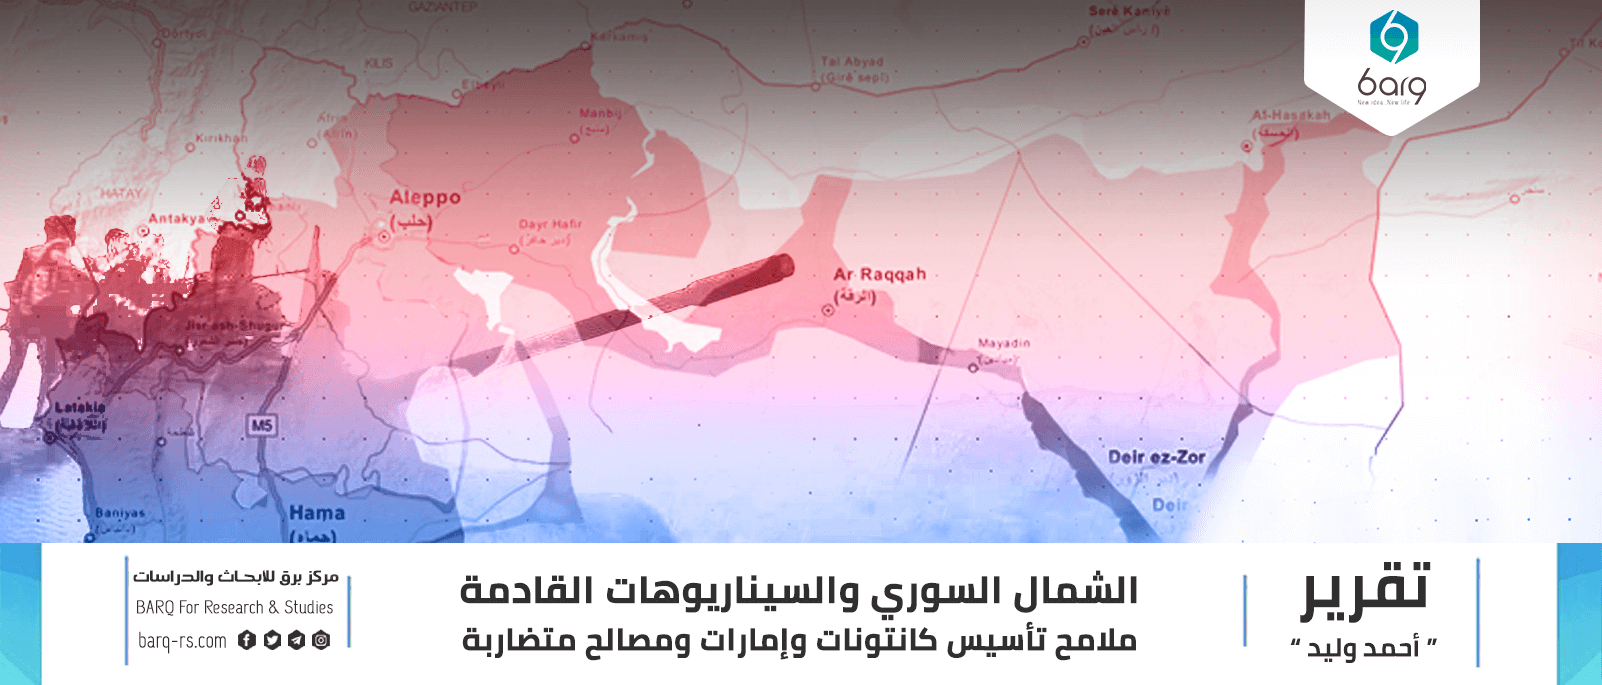 الشمال السوري والسيناريوهات القادمة (1)